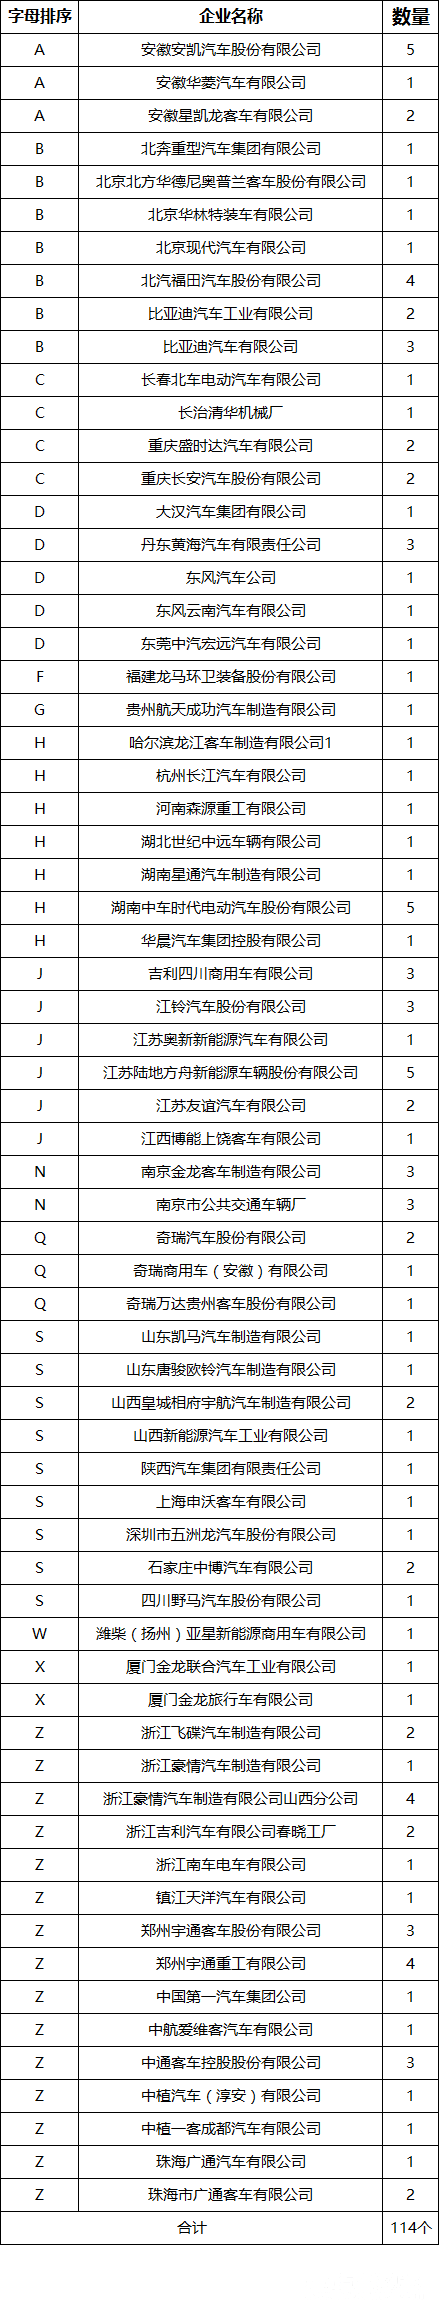 新增杭州长江乘用车/江苏陆地方舟等14家新能源汽车企业通过平台符合性检测